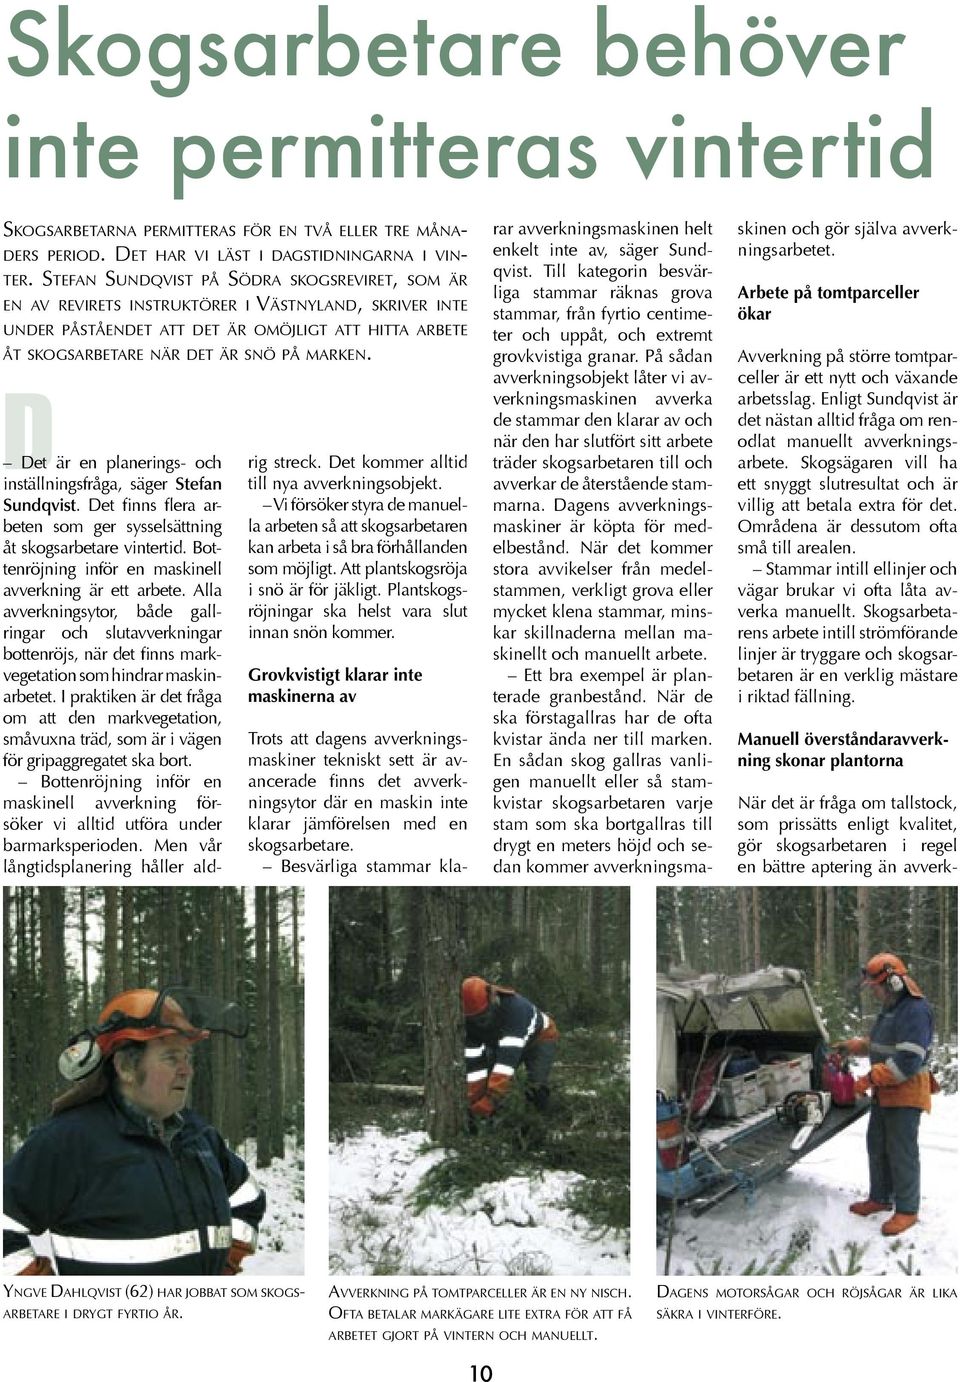 D Det är en planerings- och inställningsfråga, säger Stefan Sundqvist. Det finns flera arbeten som ger sysselsättning åt skogsarbetare vintertid.